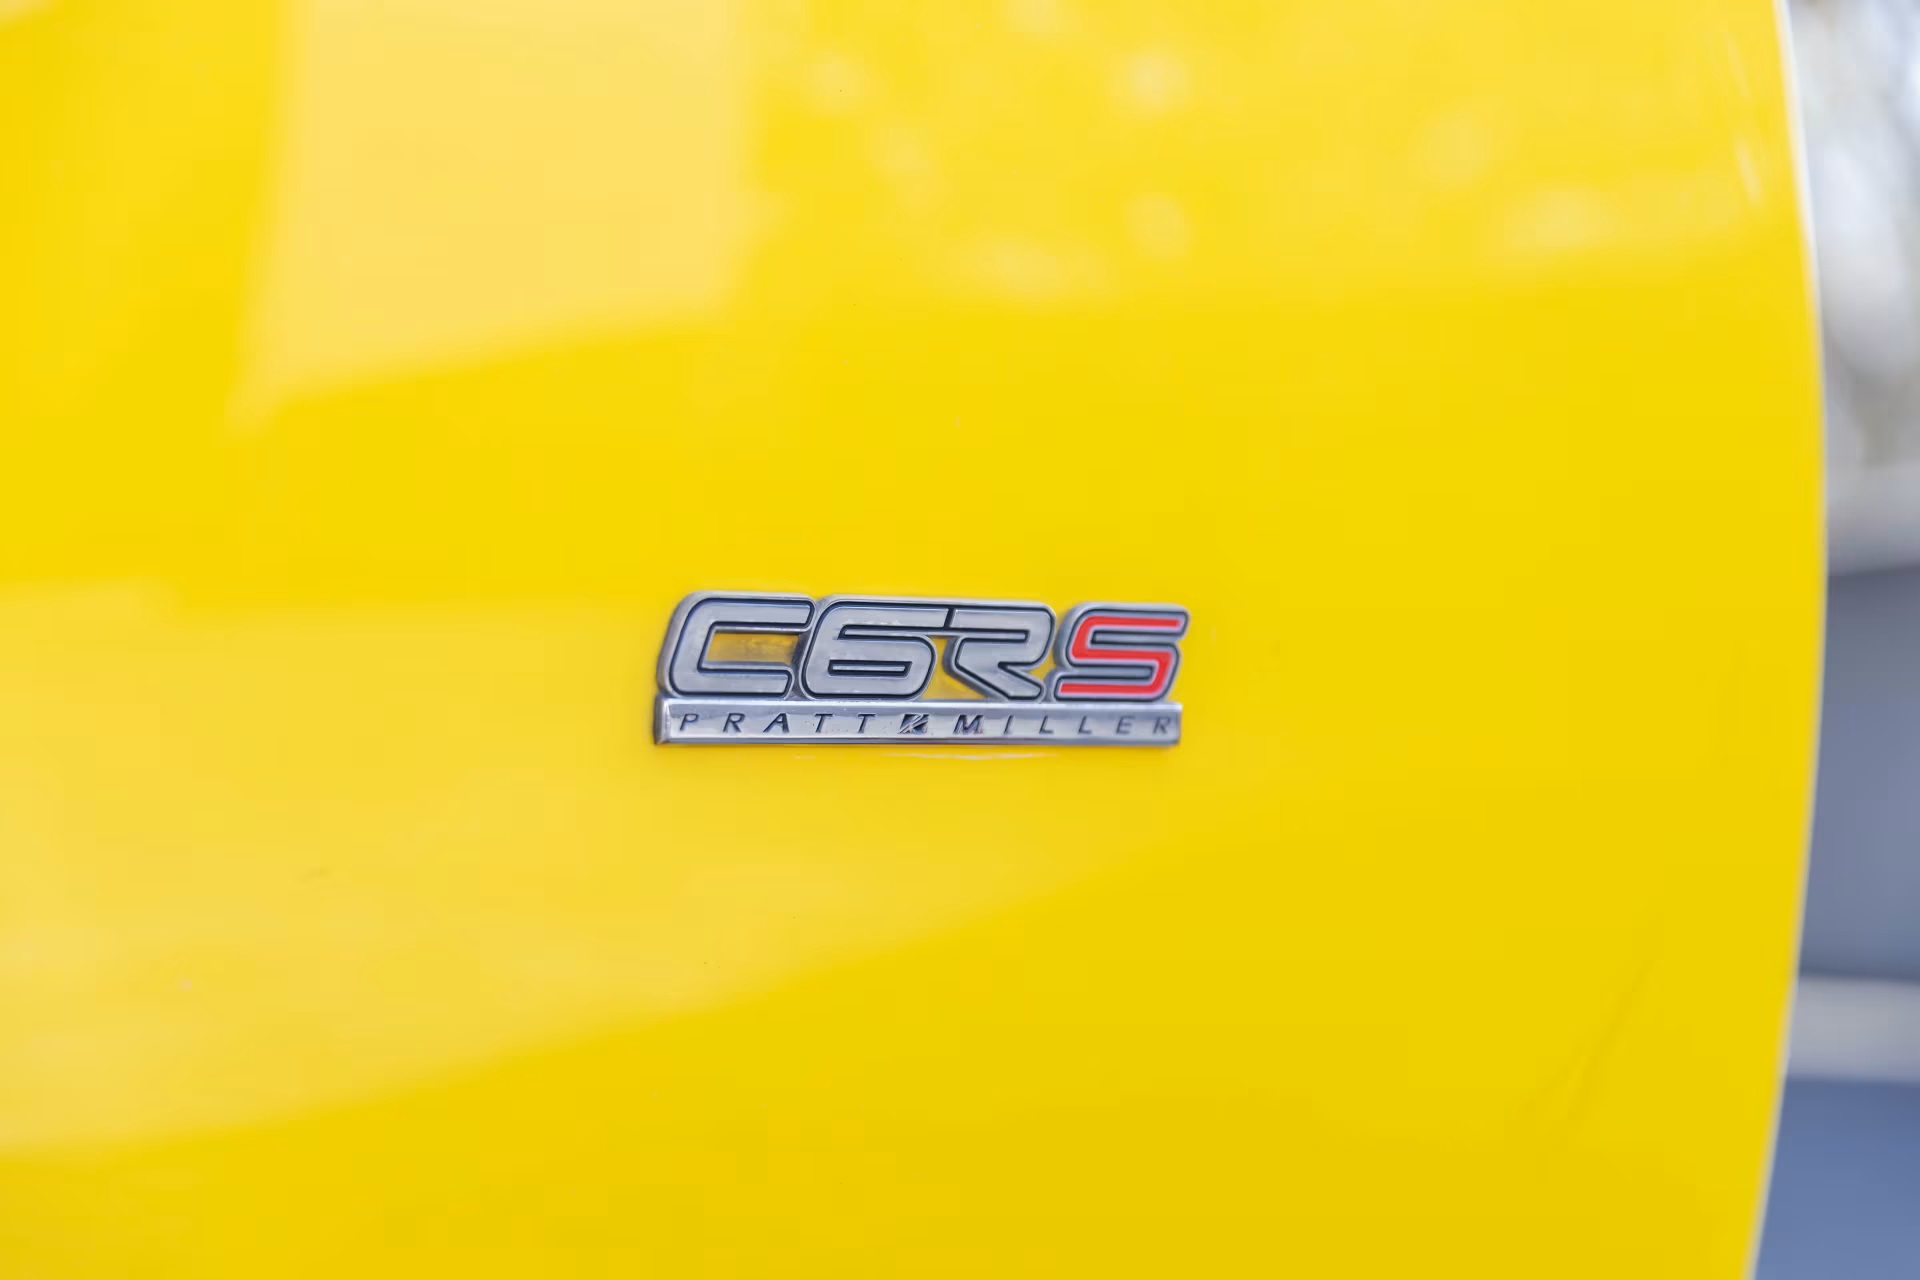 2008 Chevrolet Corvette C6RS Pratt & Miller